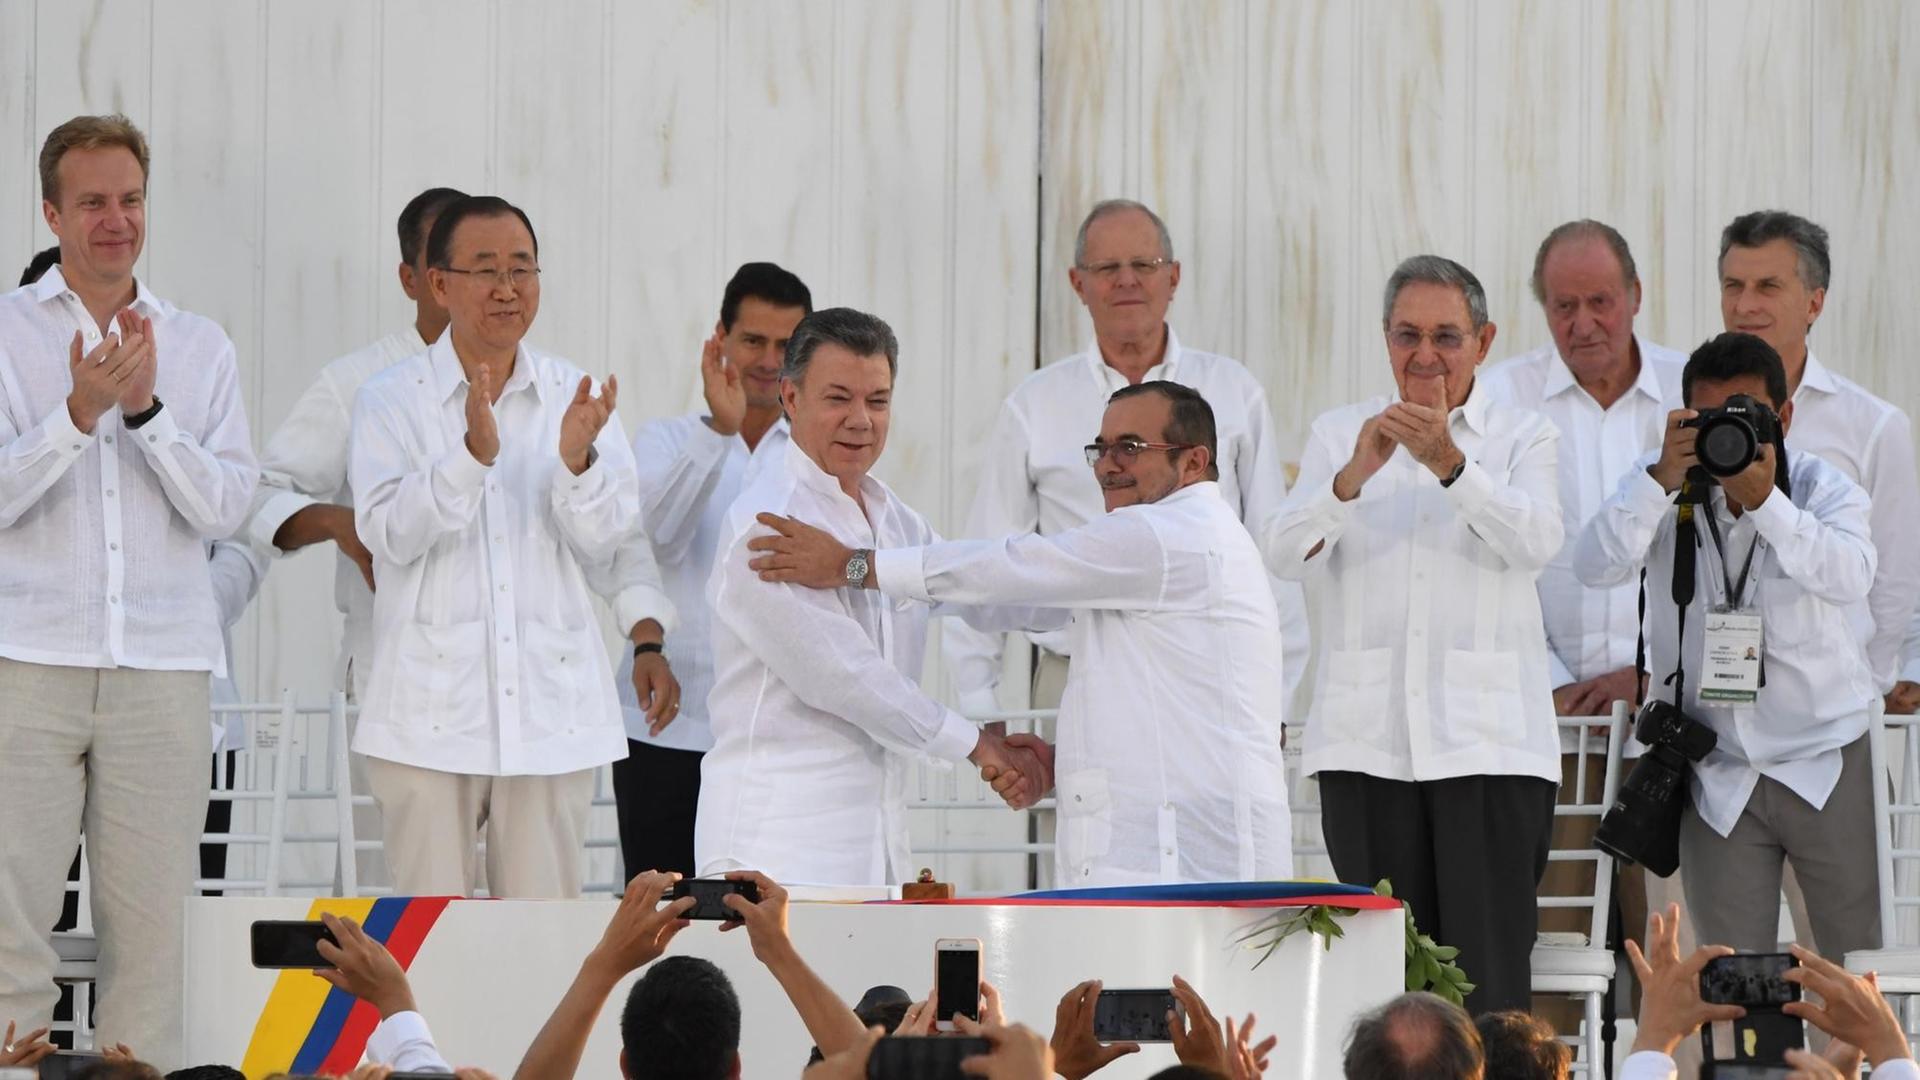 Der kolumbianische Präsident Juan Manuel Santos und der Kommandeur der FARC-Guerrilla-Organisation Timoleon Jimenez, alias Timochenko, geben sich beim Festakt in Cartagena die Hand.